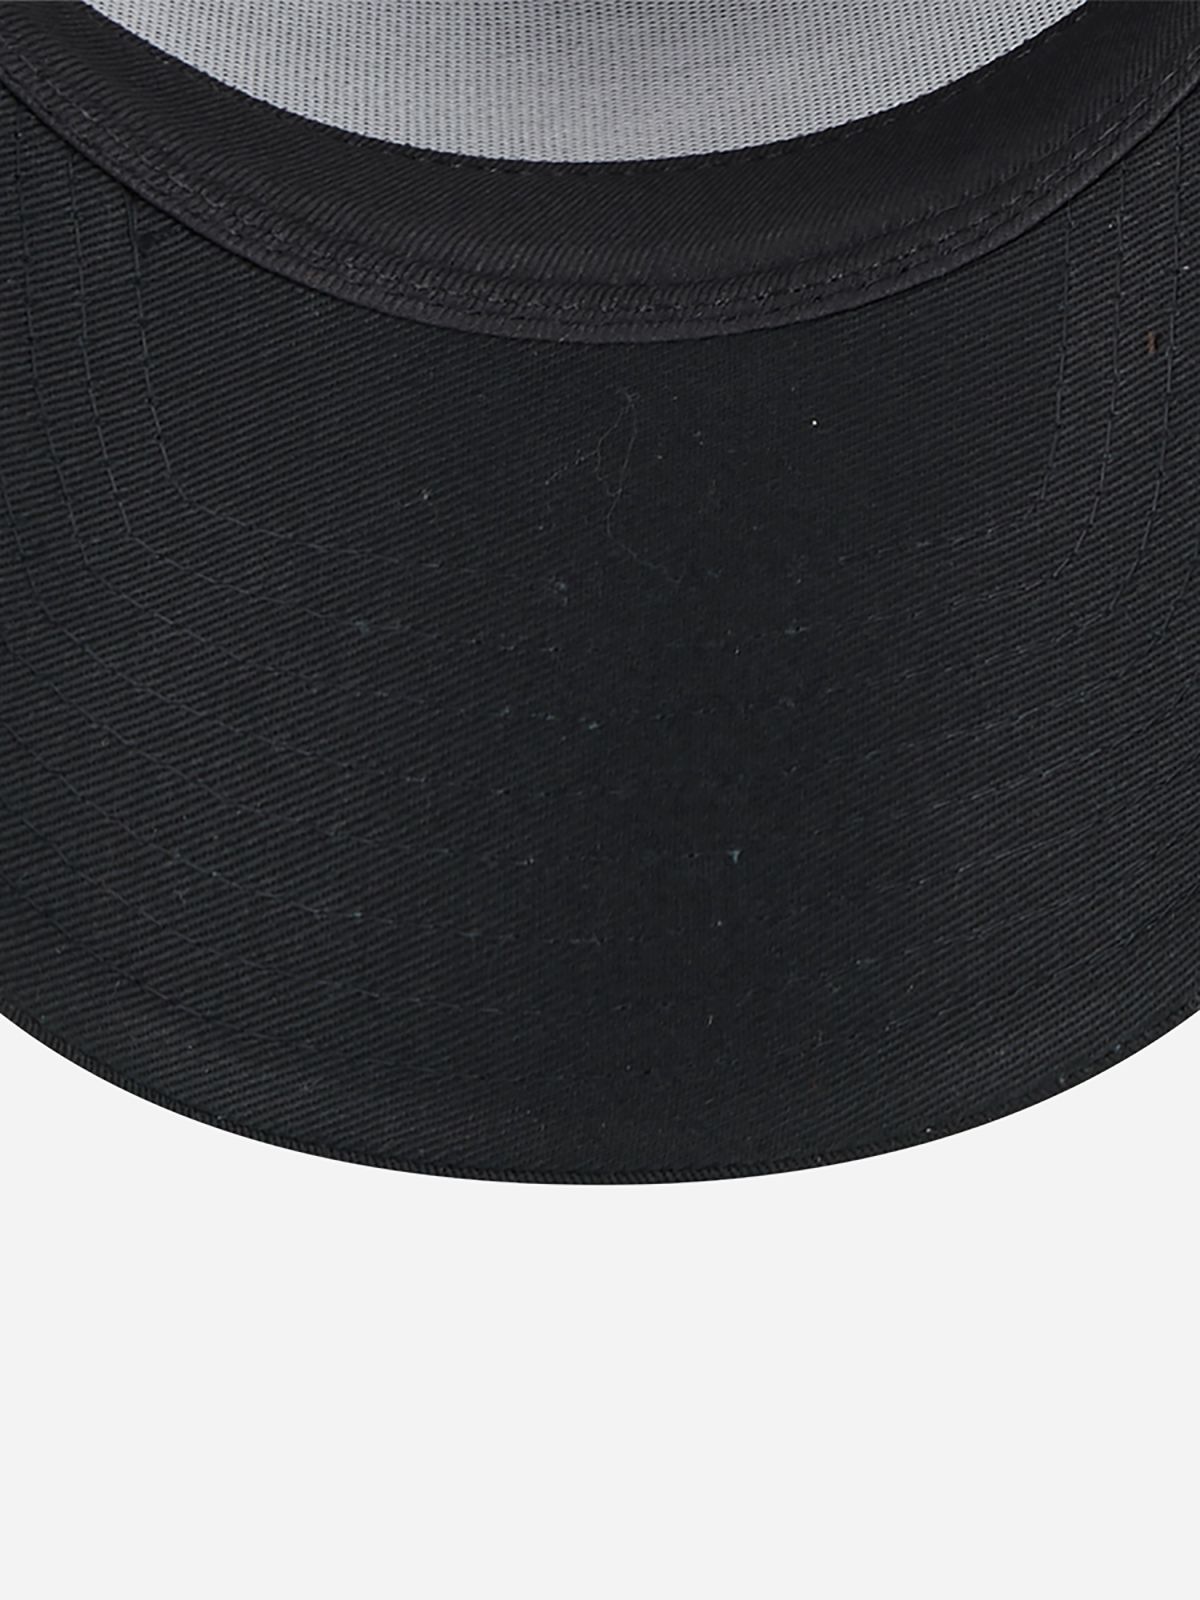  כובע מצחייה עם לוגו / גברים של NEW ERA